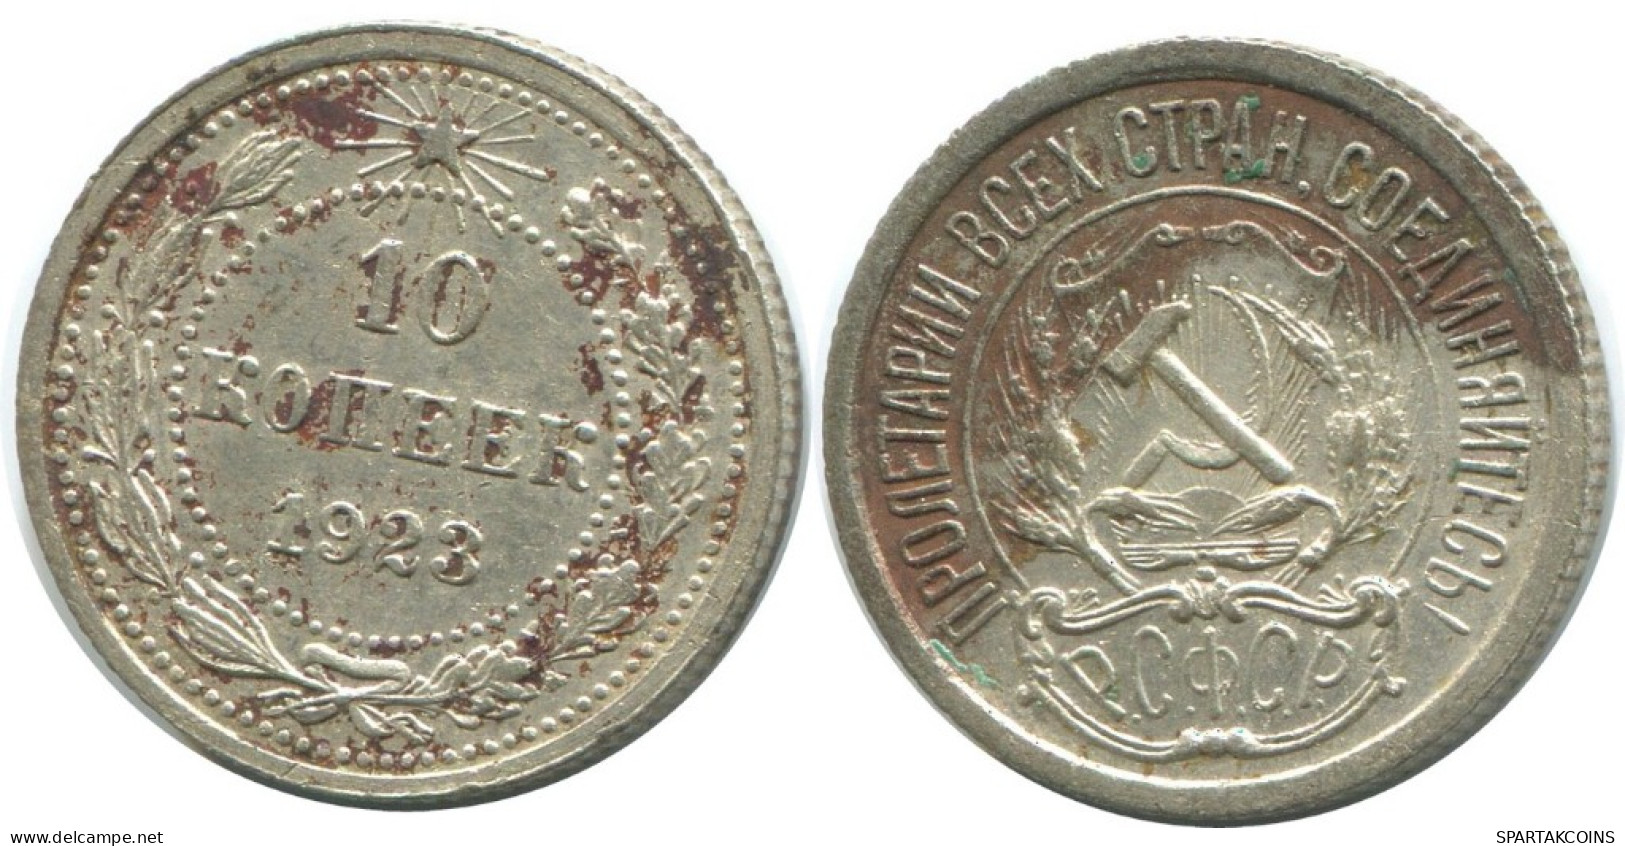 10 KOPEKS 1923 RUSSLAND RUSSIA RSFSR SILBER Münze HIGH GRADE #AE936.4.D.A - Rusland